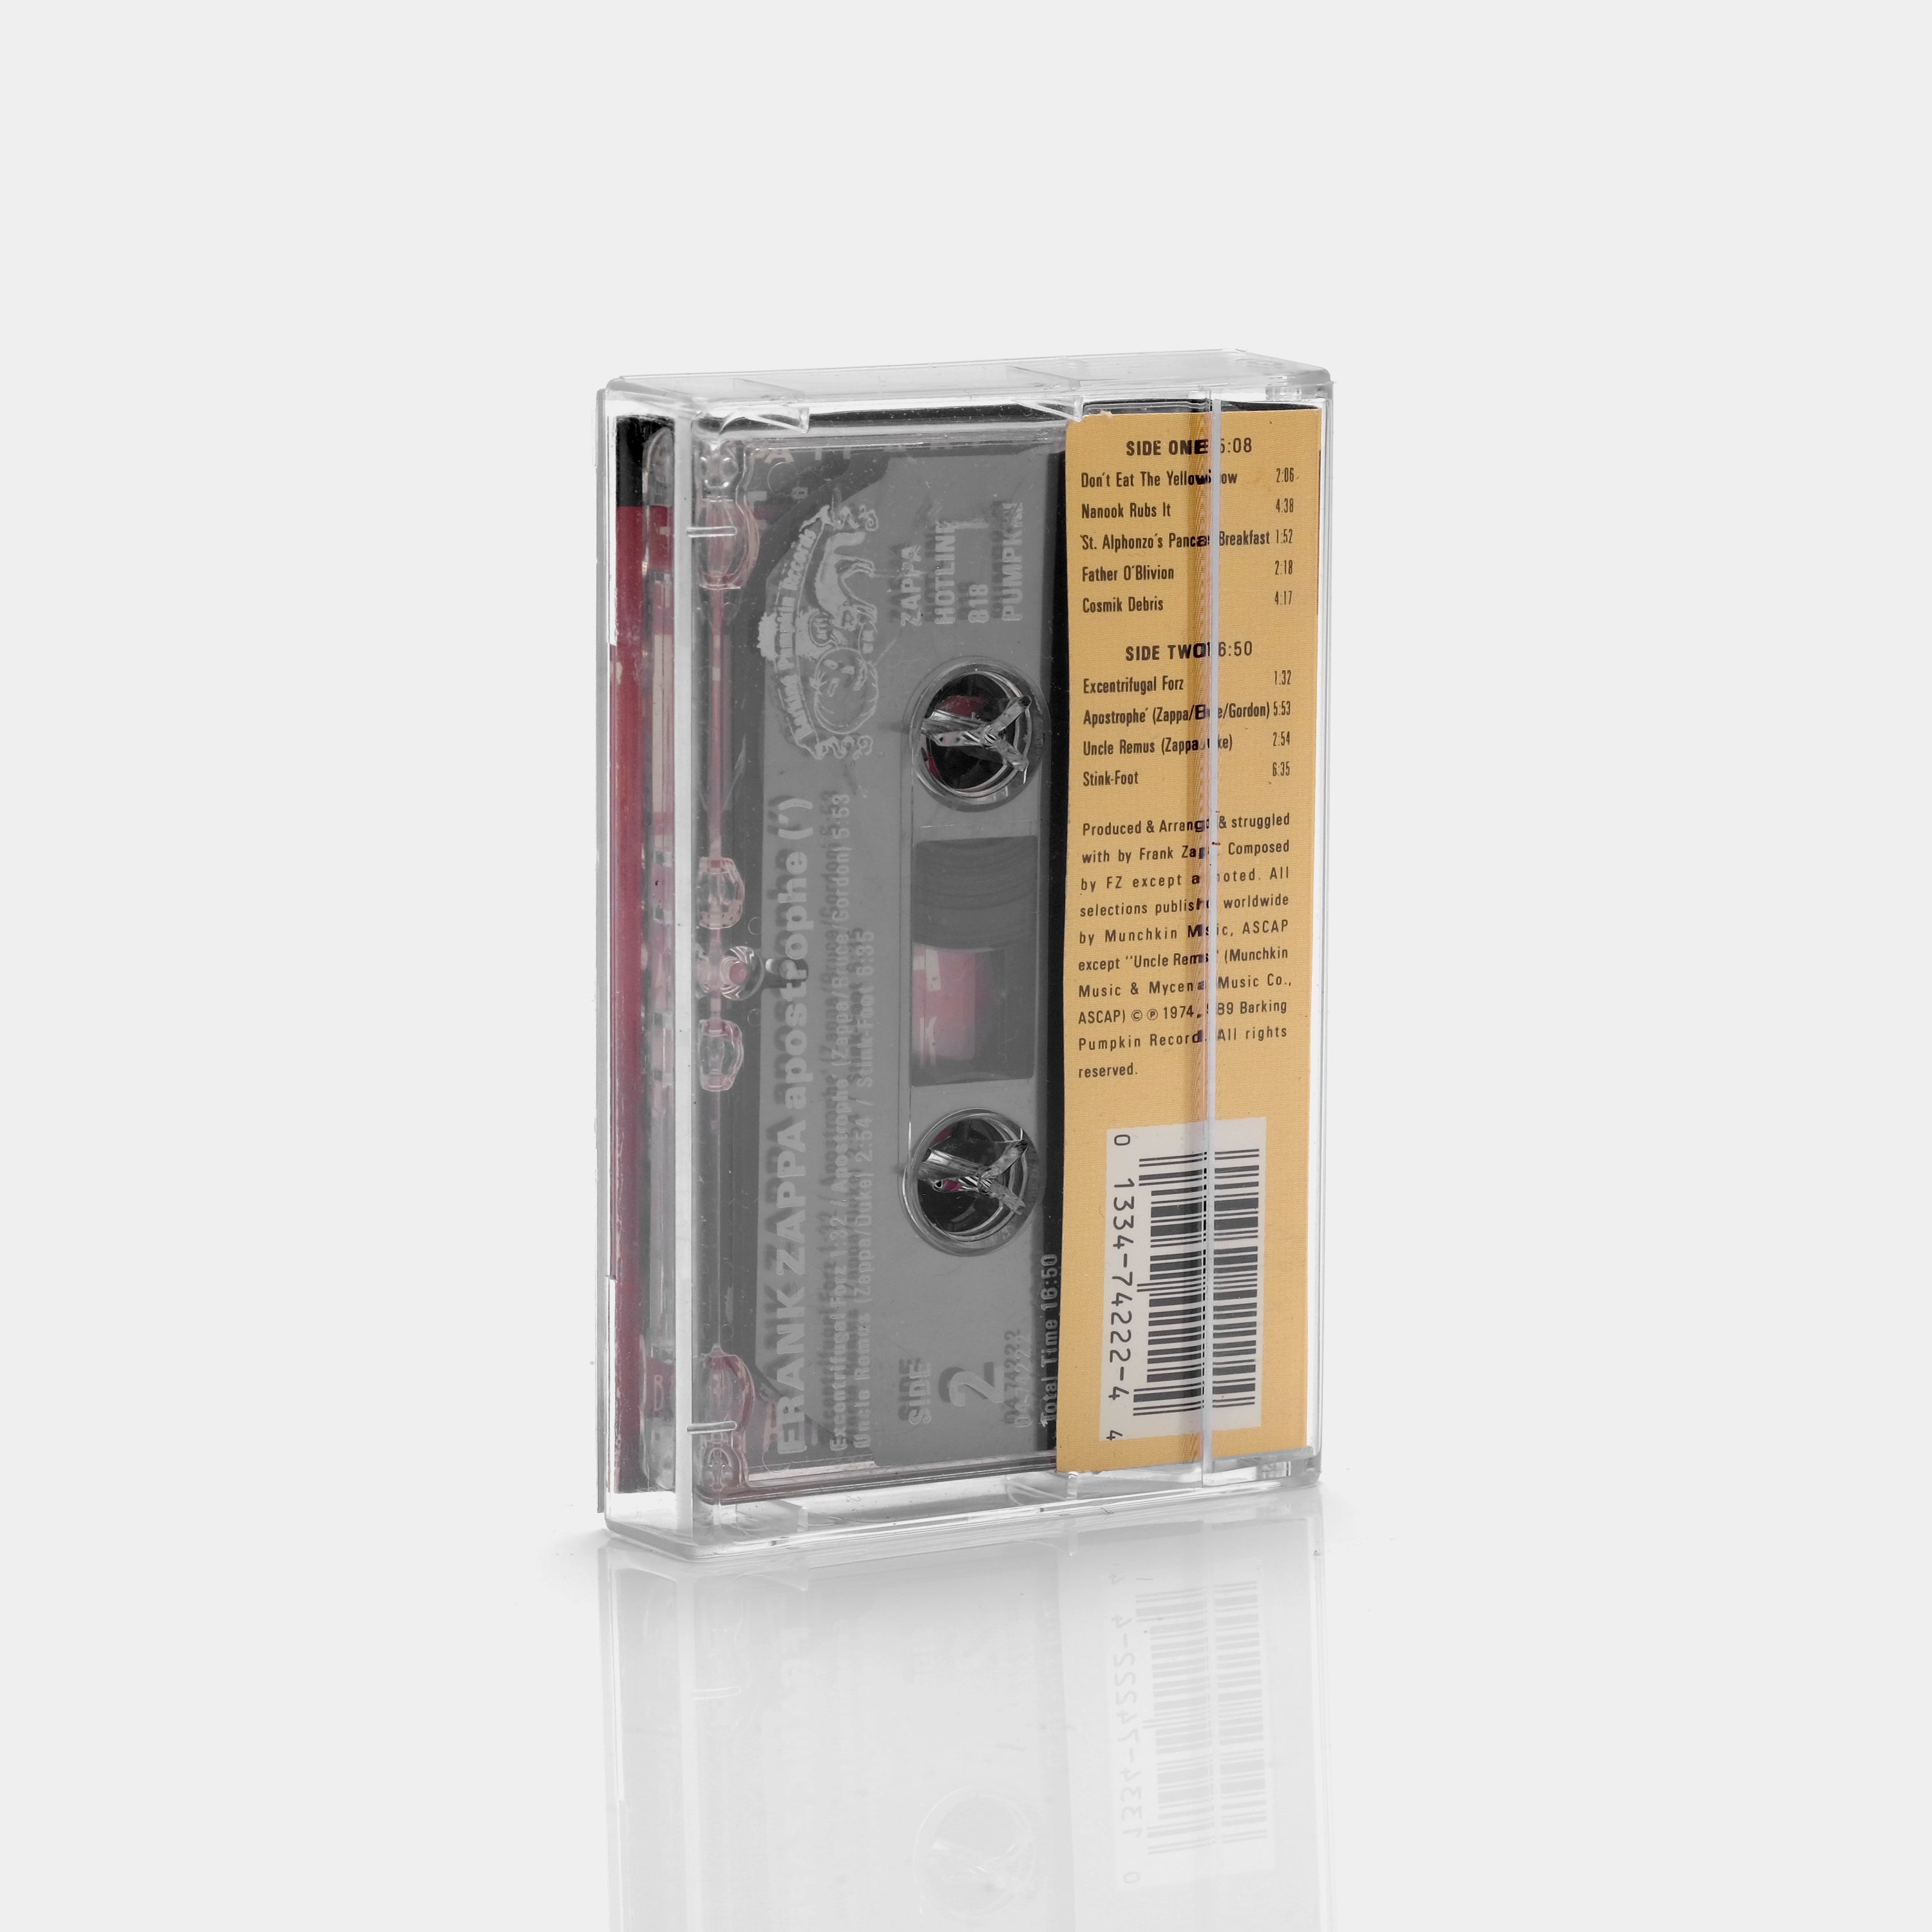 Frank Zappa - Apostrophe(') Cassette Tape